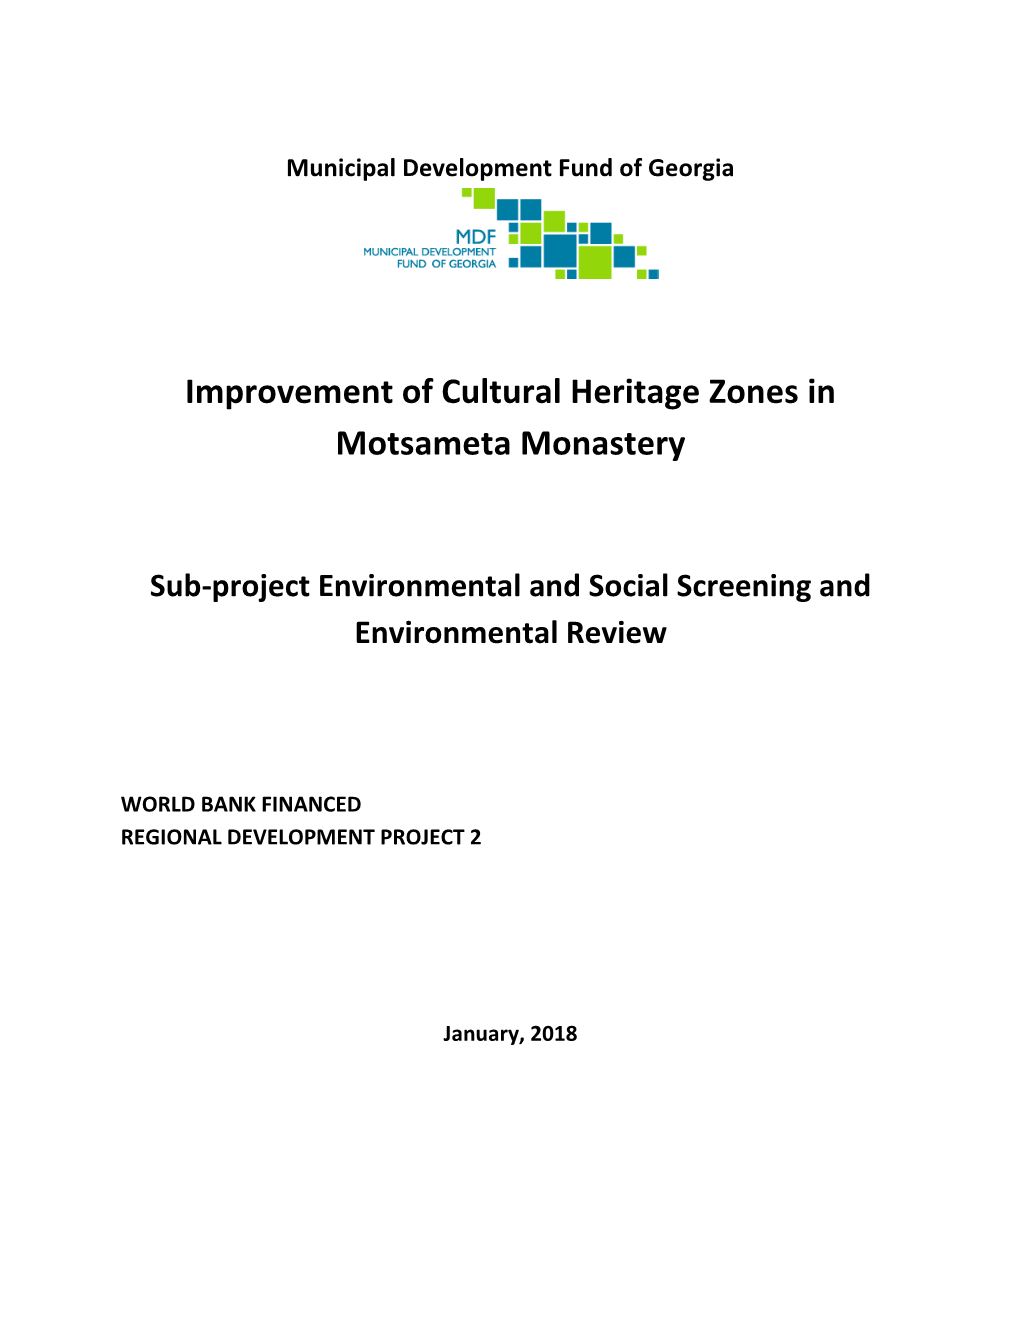 Improvement of Cultural Heritage Zones in Motsameta Monastery